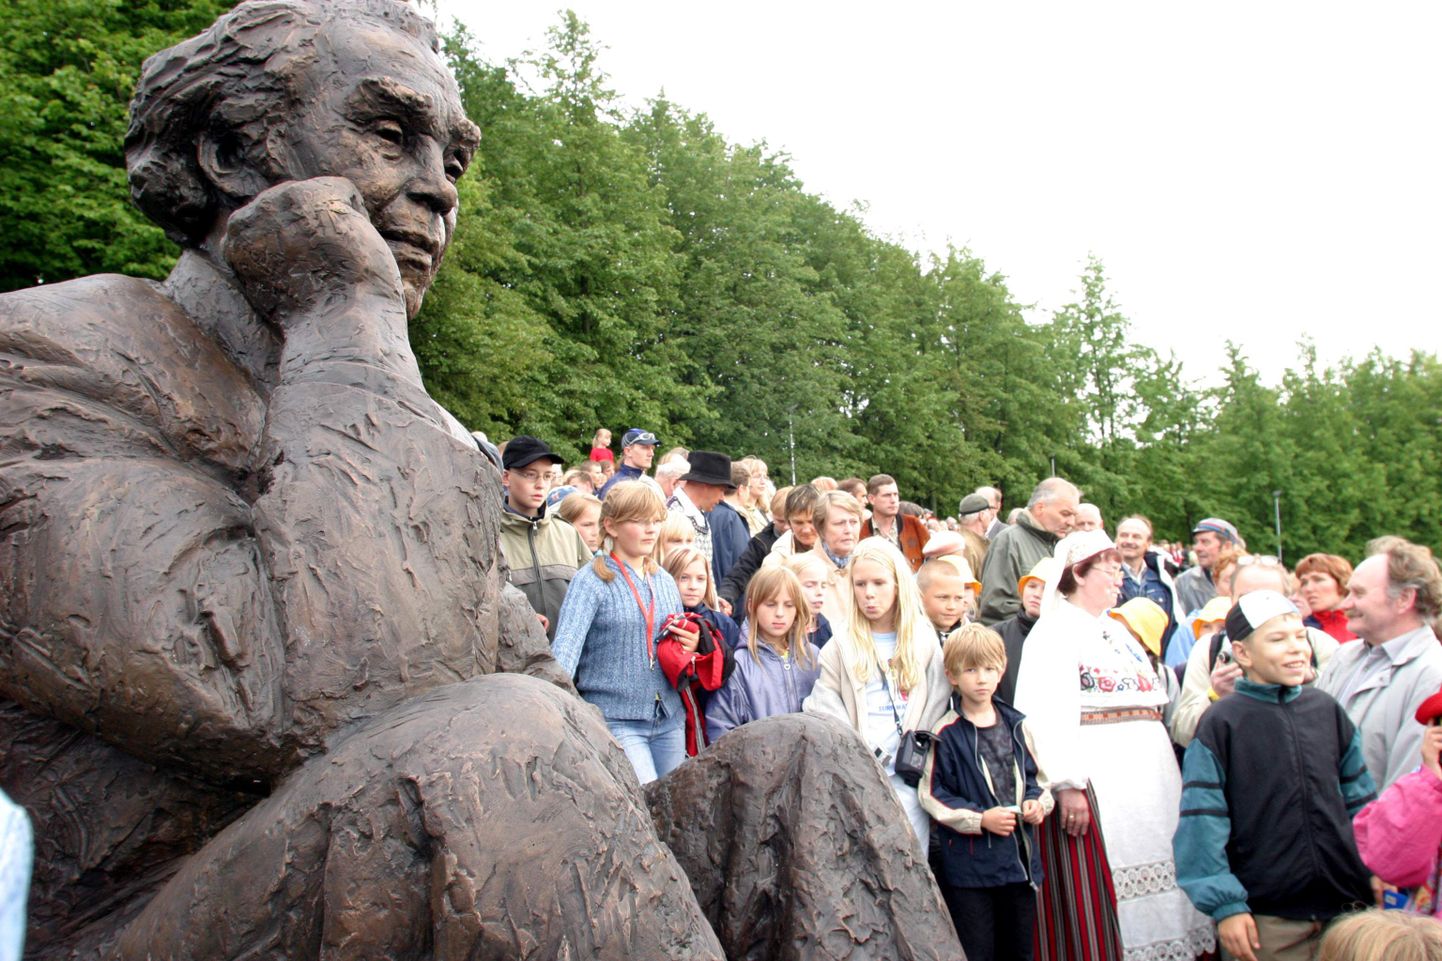 Rootsi Eestlaste Liit Eesti valitsusele ettepaneku luua ja paigaldada Roman Toi austuseks tema kuju Tallinna lauluväljakul Gustav Ernesaksa kuju kõrvale.